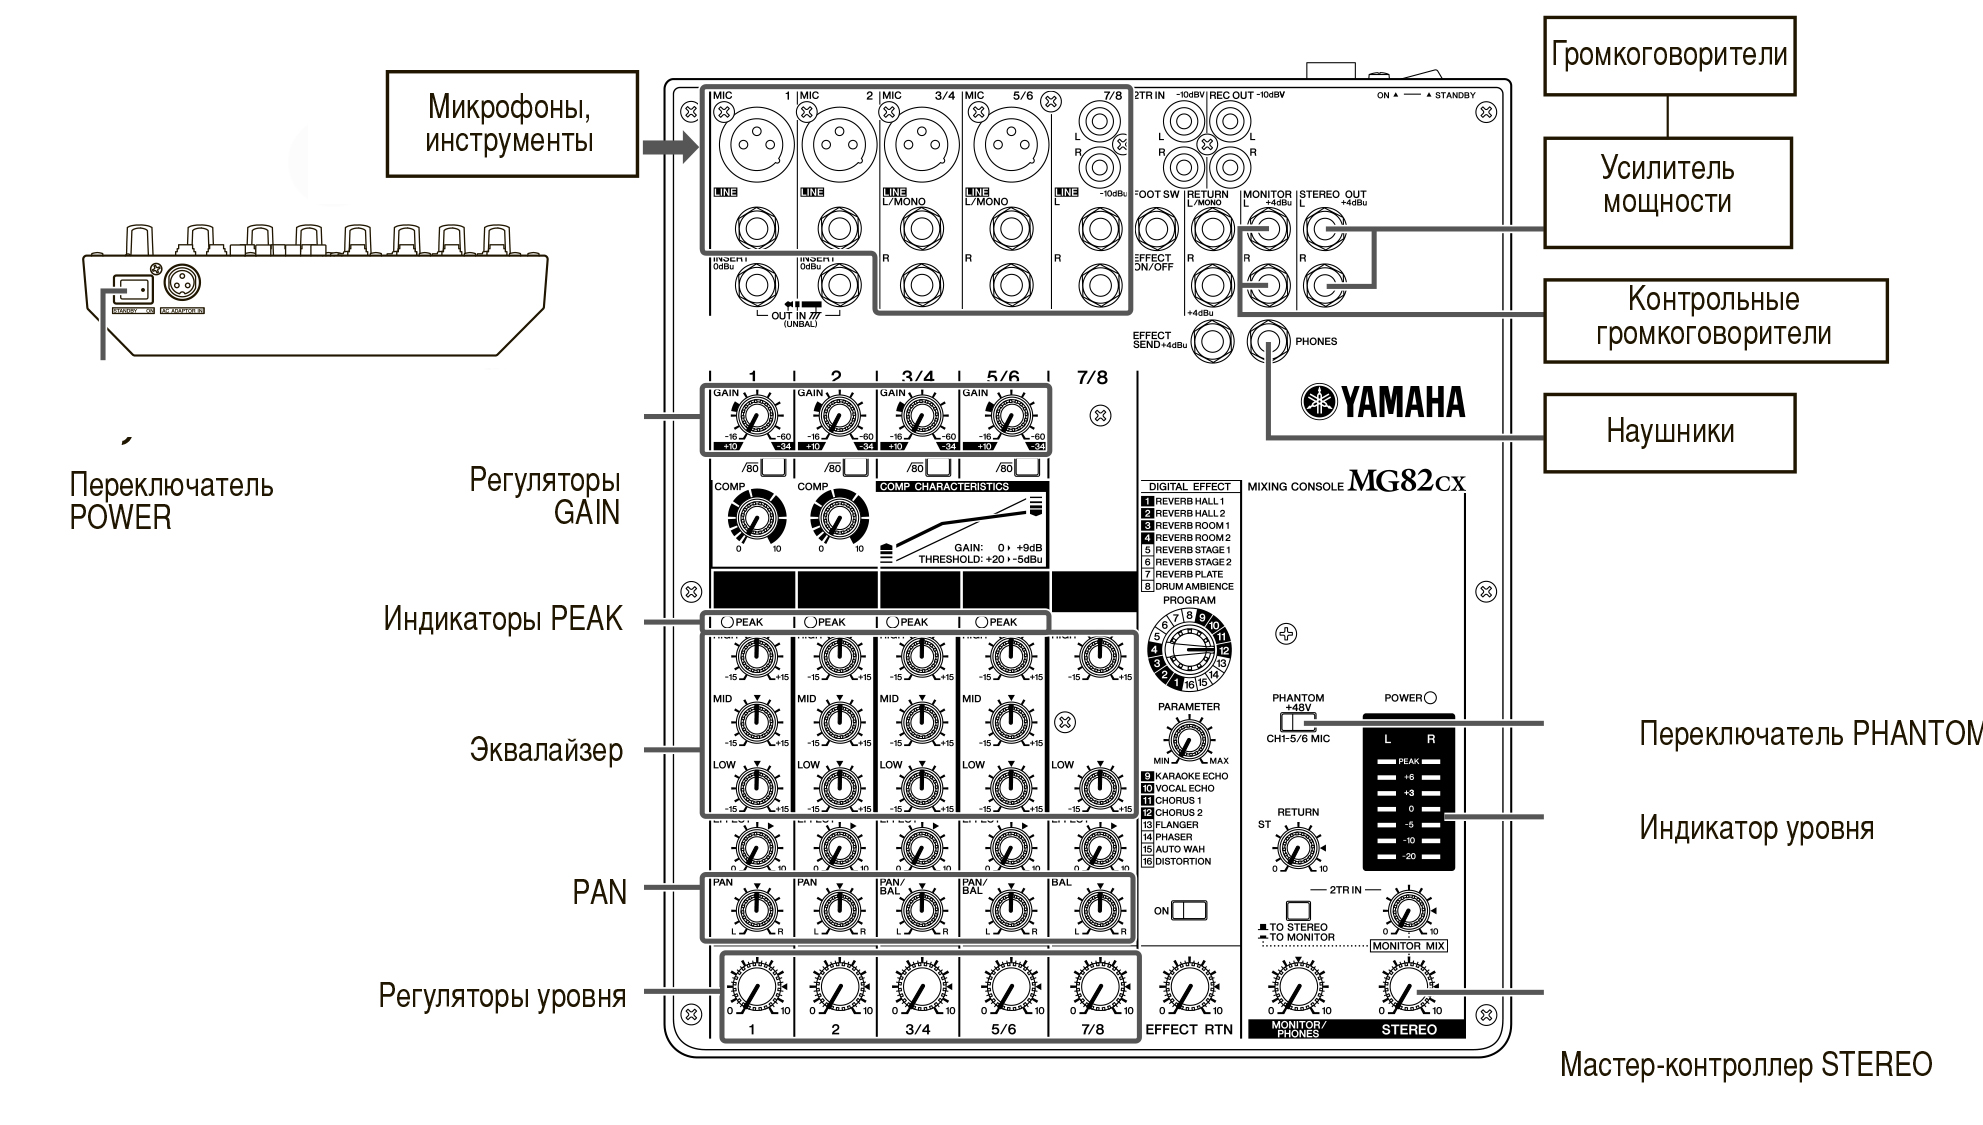 Настроить микрофон пульт. Микшерный пульт Yamaha mg102c. Схема микшерного пульта Yamaha mg102c. Микшер Yamaha MG 82. Yamaha 102 микшер блок питания.